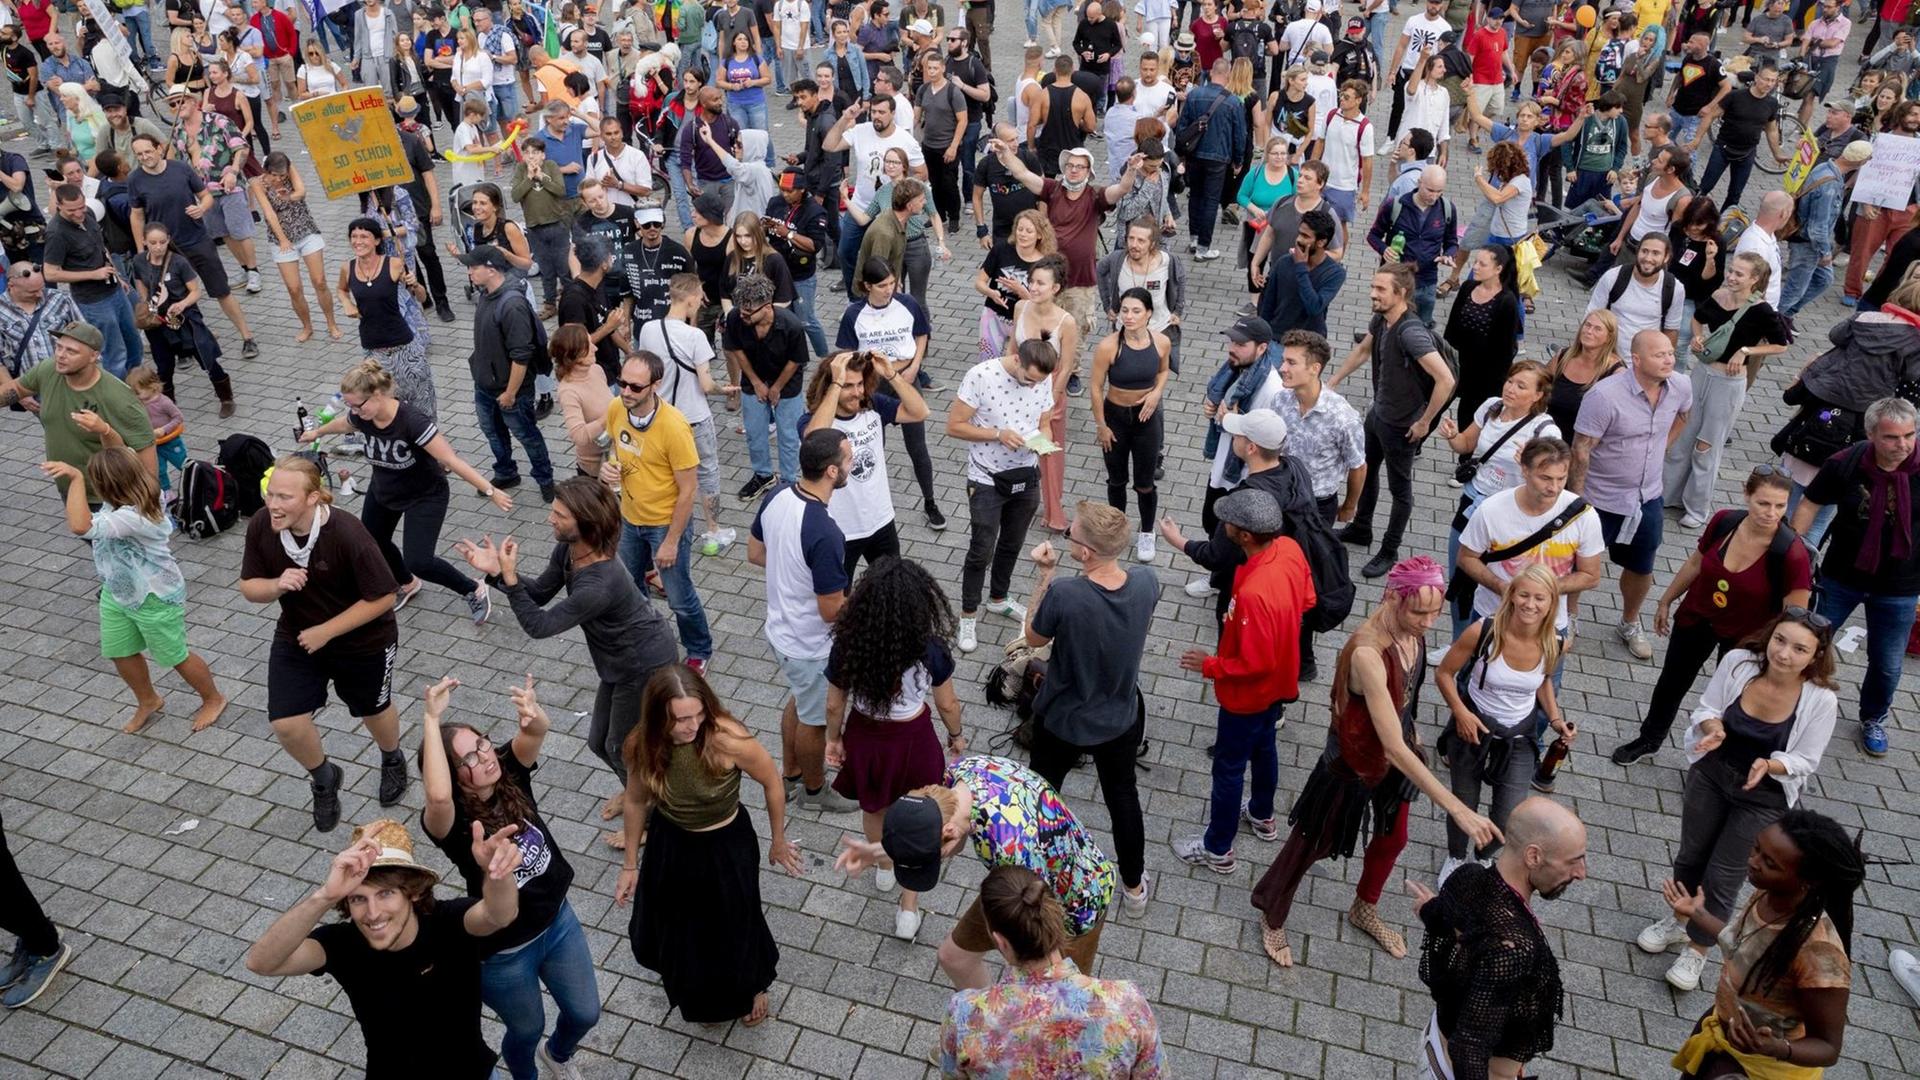 29.08.2020, Berlin: Teilnehmer eines Protests gegen die Corona-Maßnahmen tanzen vor dem Brandenburger Tor. Foto: Christoph Soeder/dpa | Verwendung weltweit